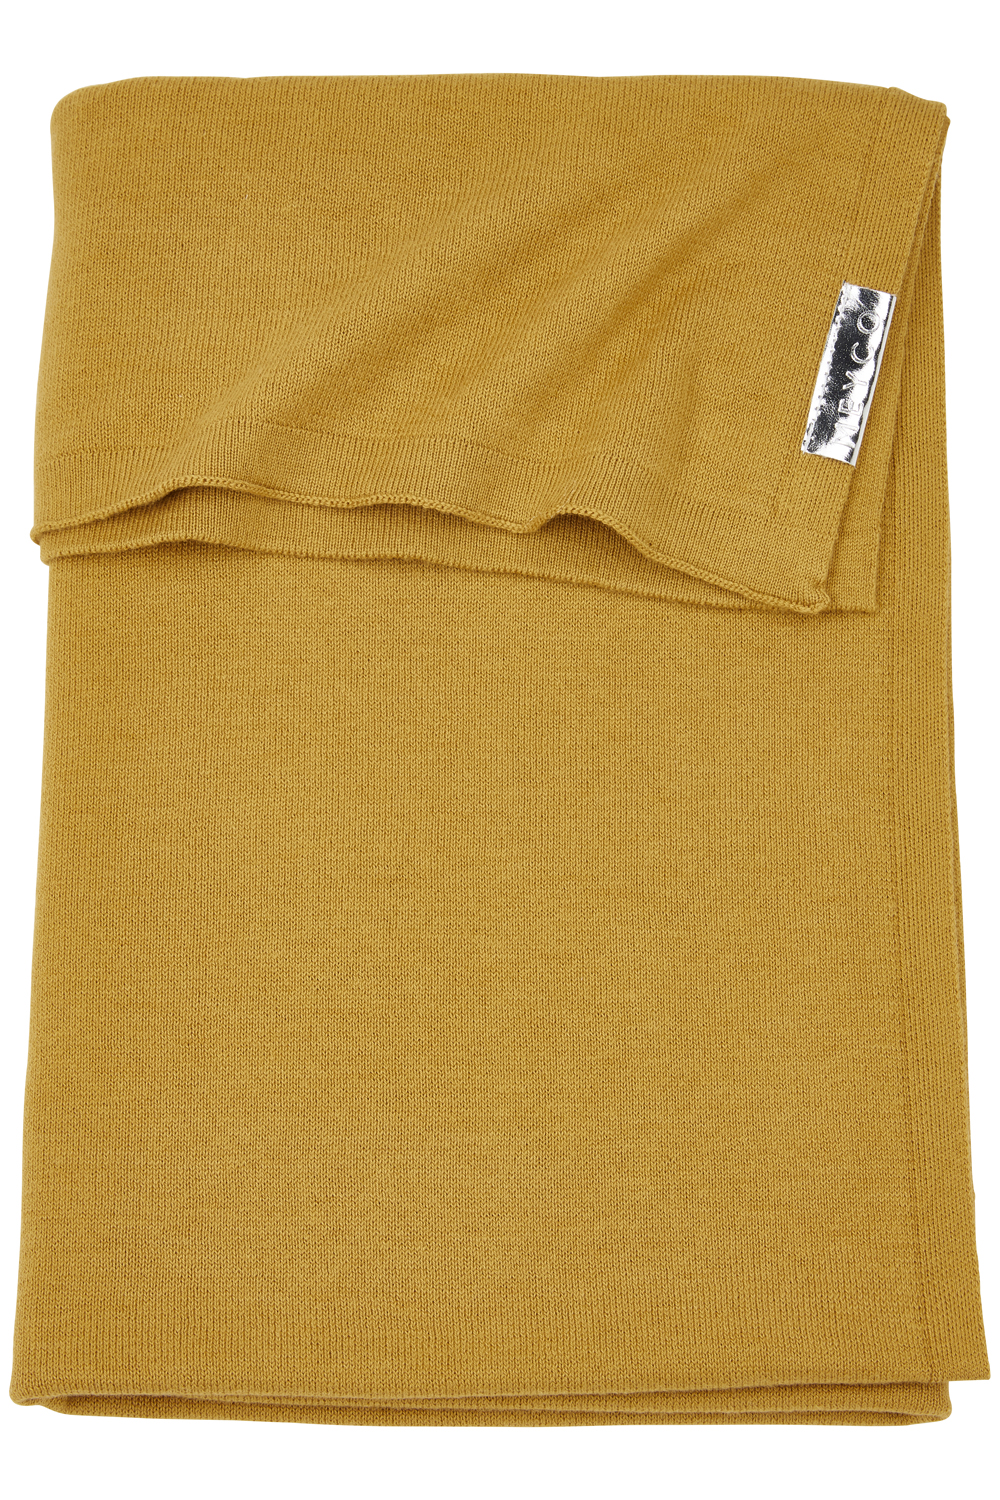 Wiegdeken Knit Basic - honey gold - 75x100cm